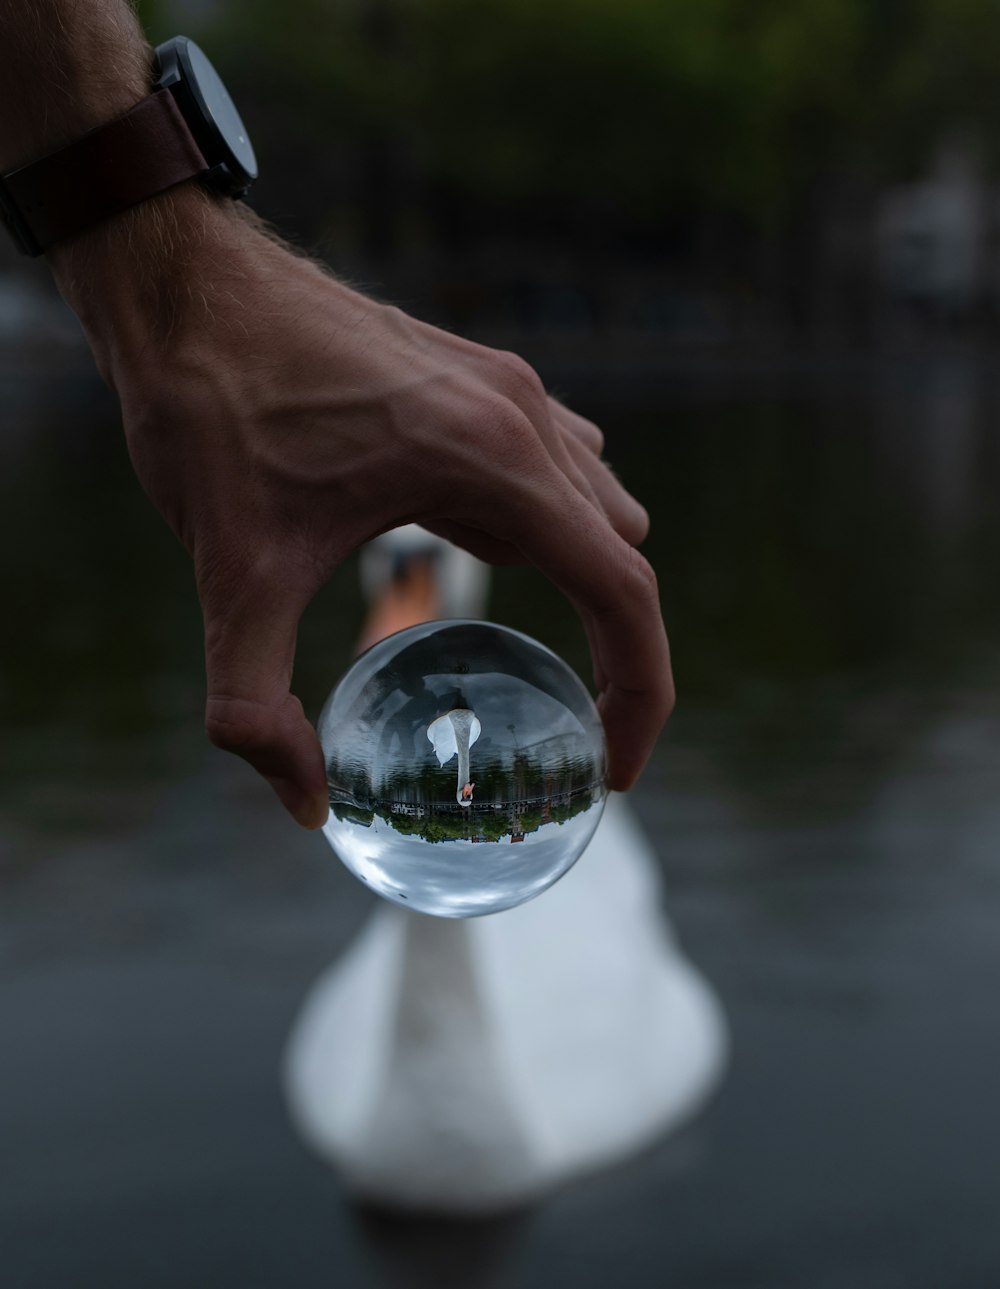 white swan seen through a clear glass ball